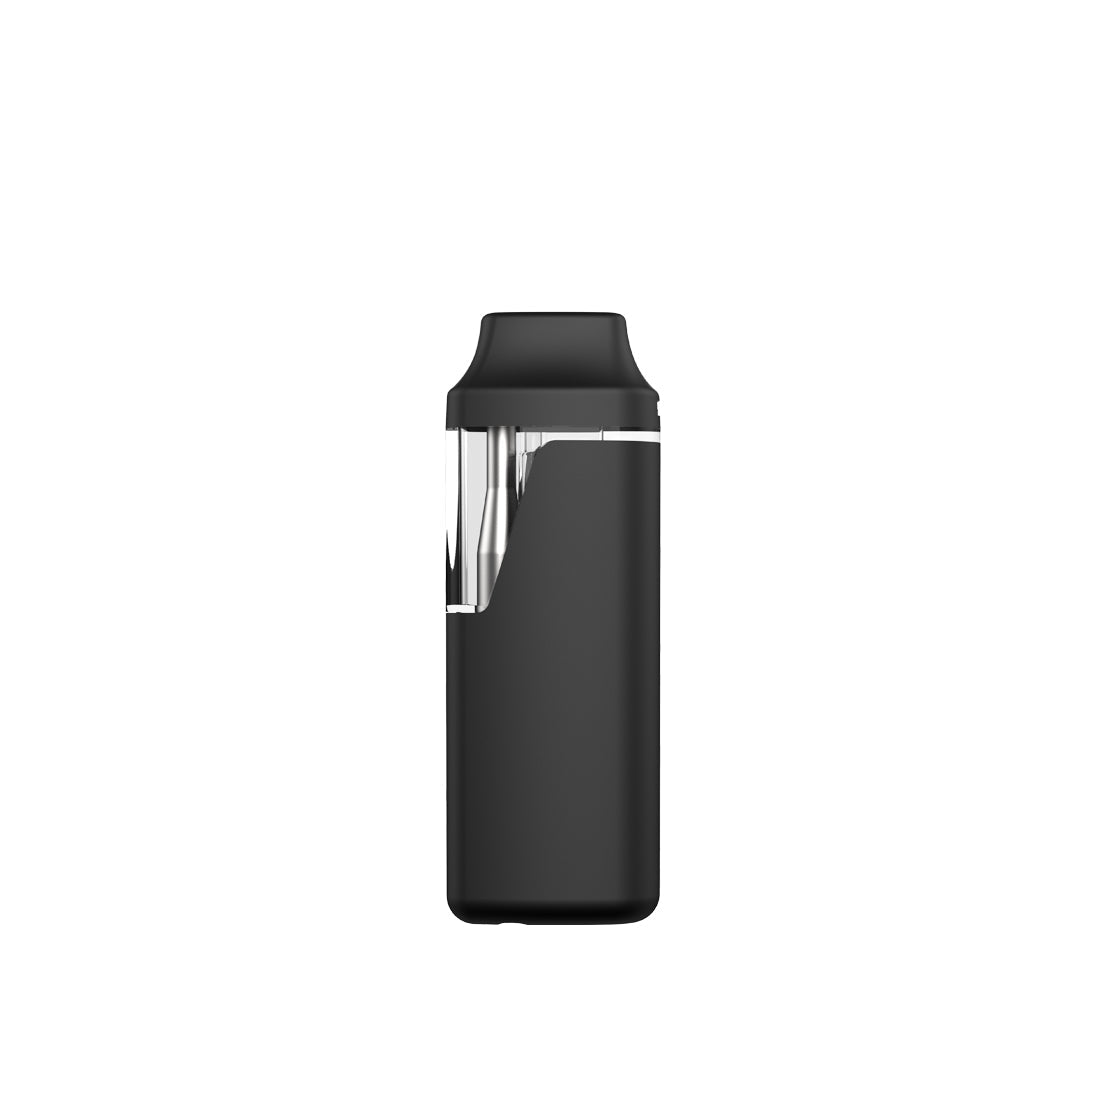 Uzo Pro 1.0mL Rechargeable Disposable Vape Pen - iKrusher